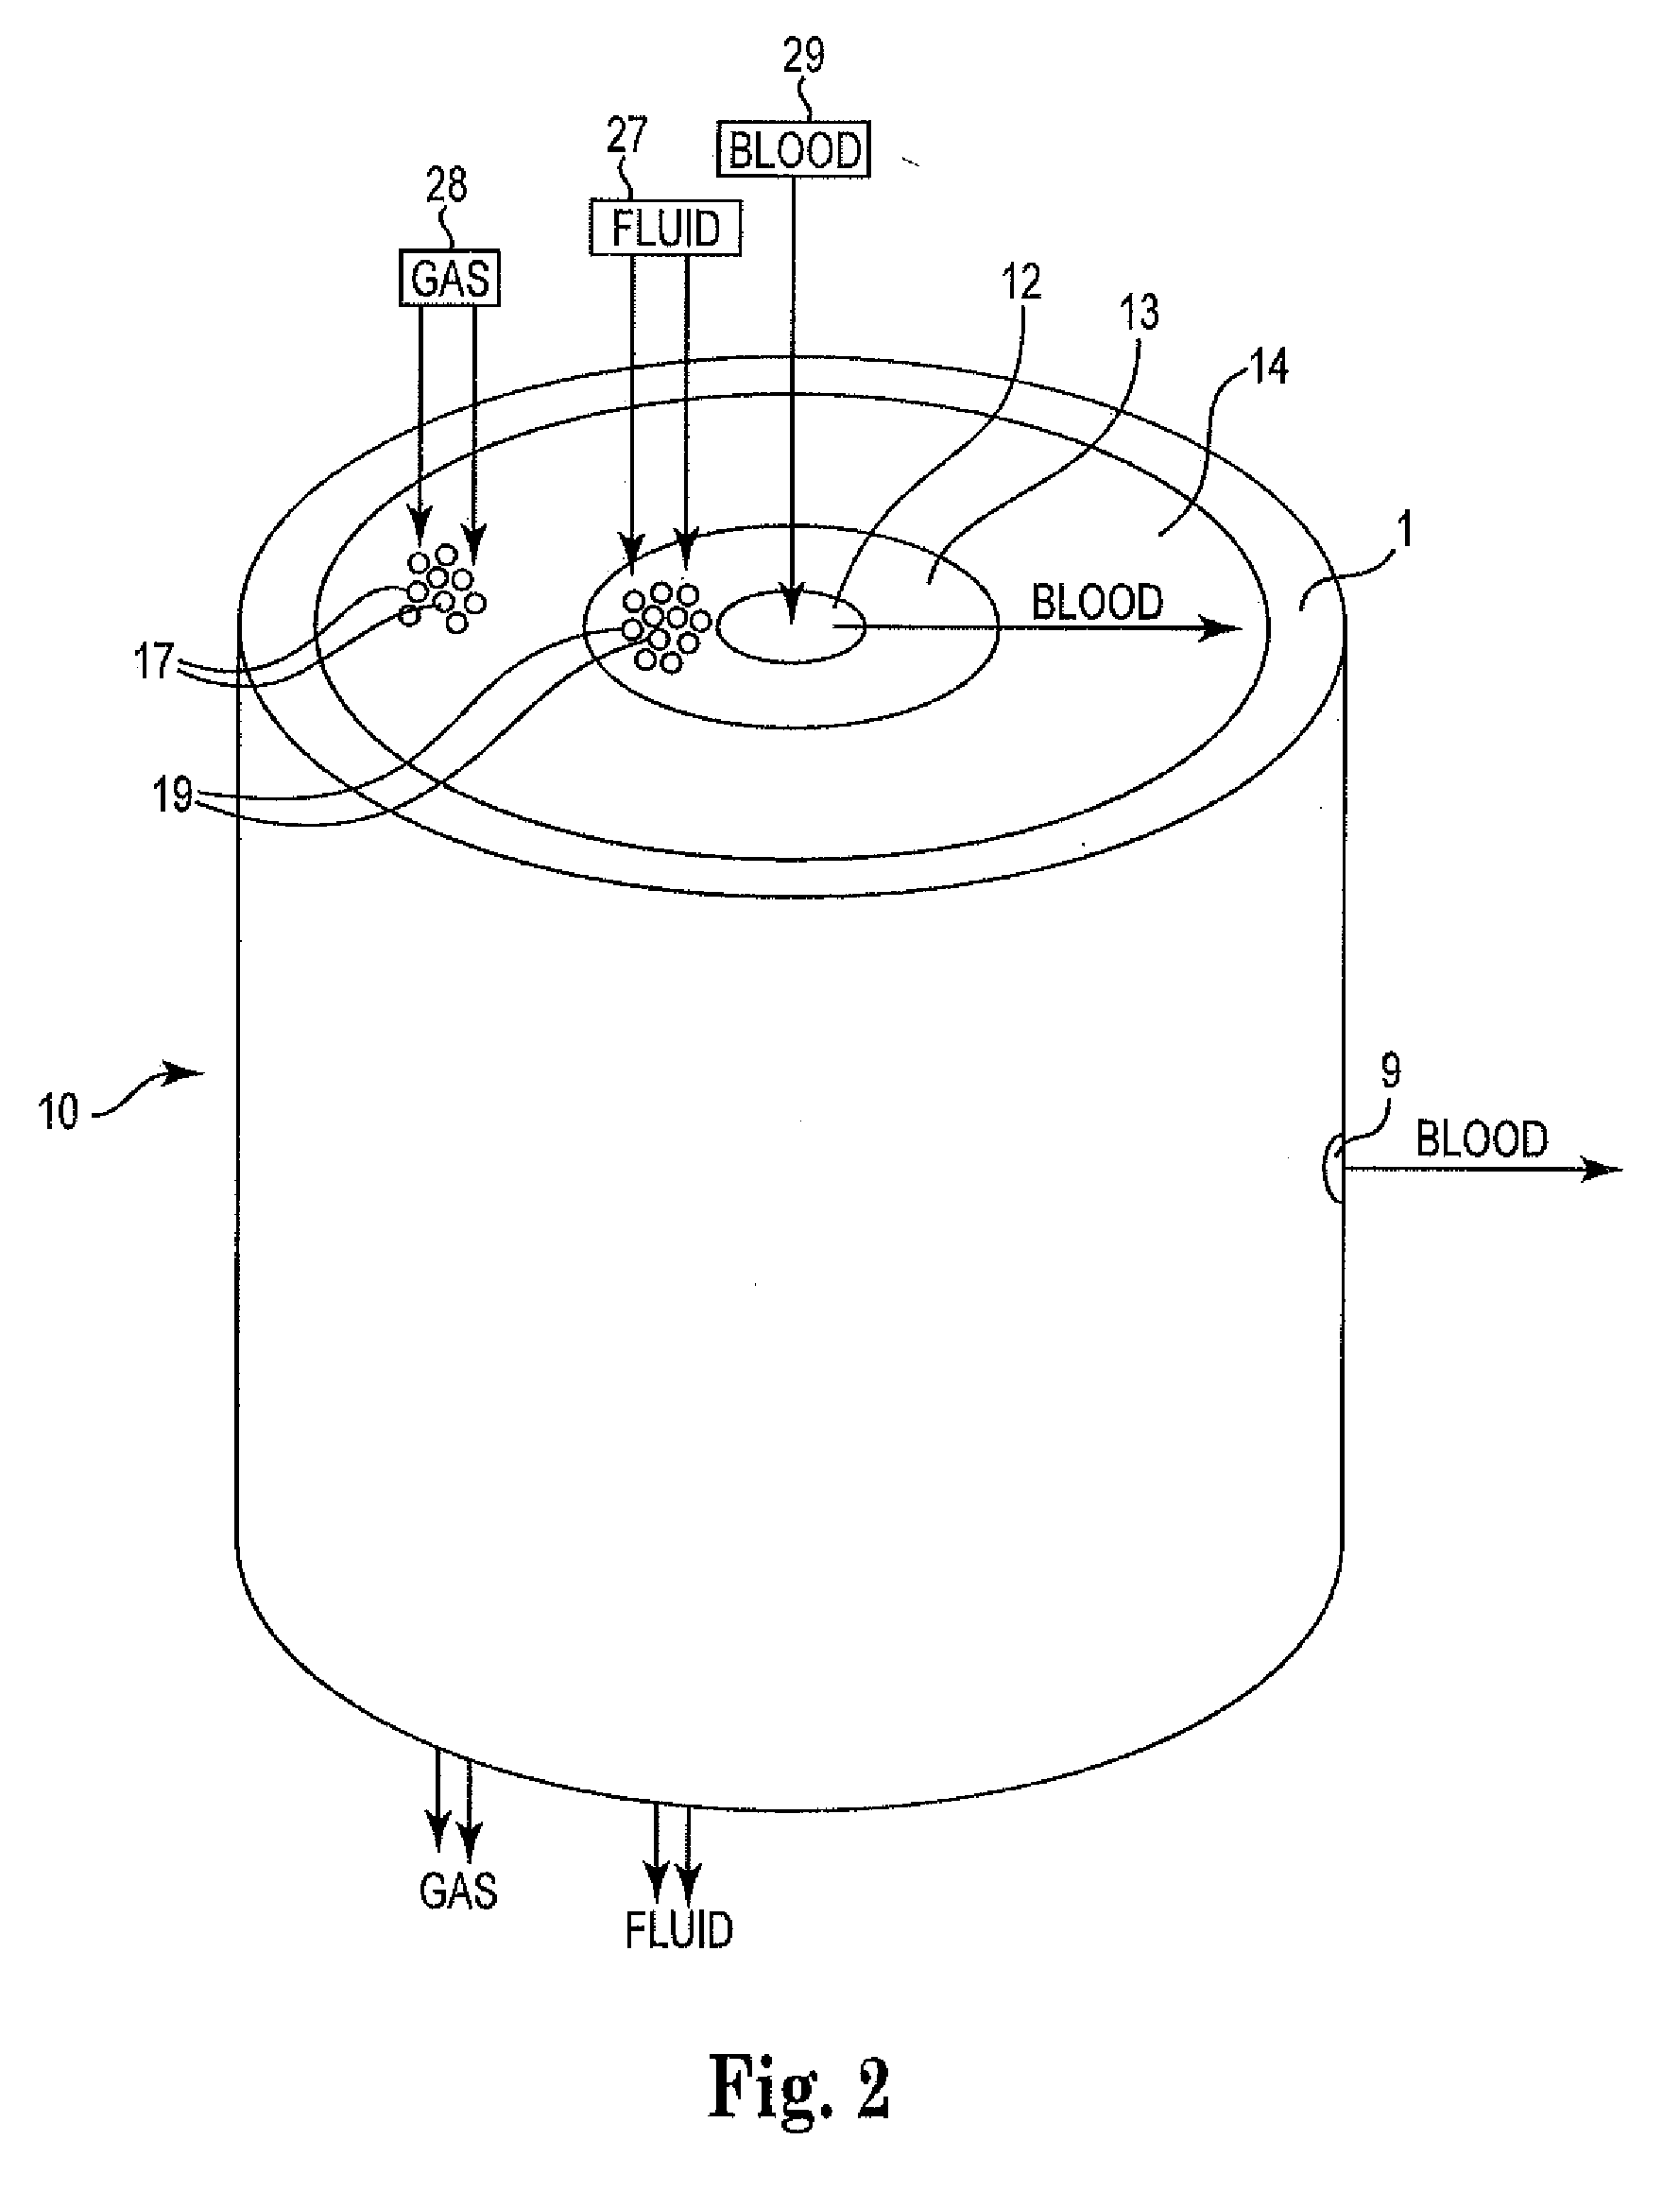 Radial flow oxygenator/heat exchanger